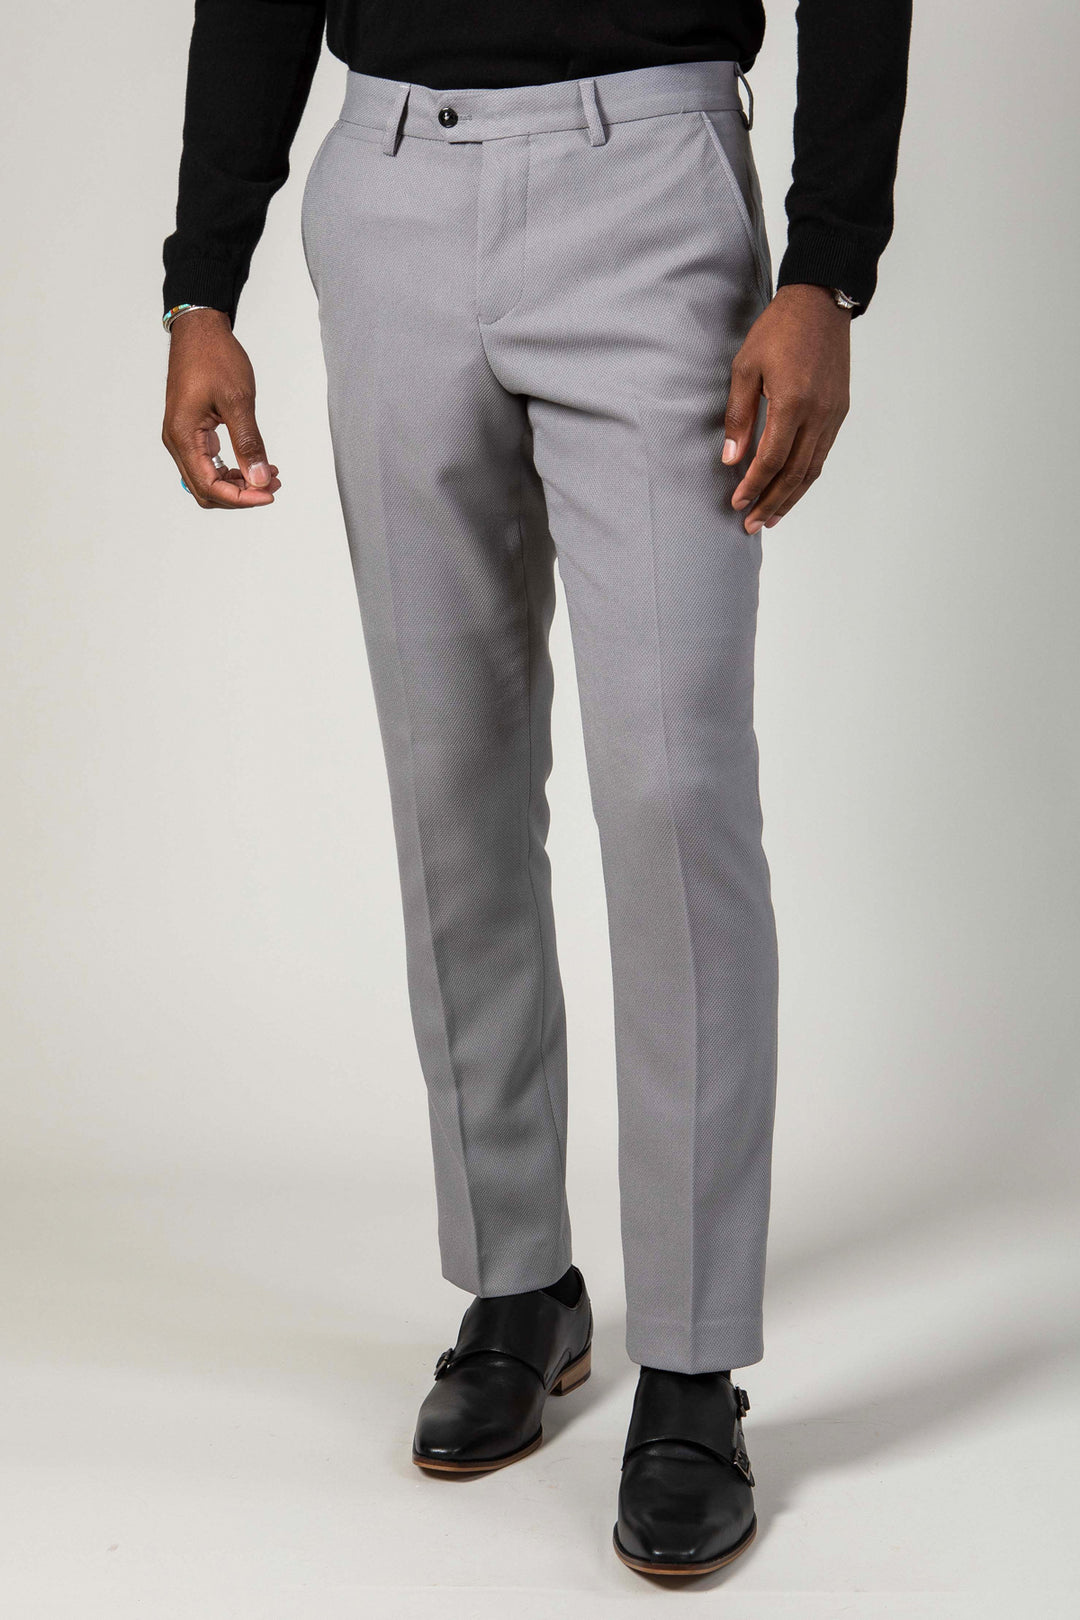 EDWIN - Silver Grey Trousers